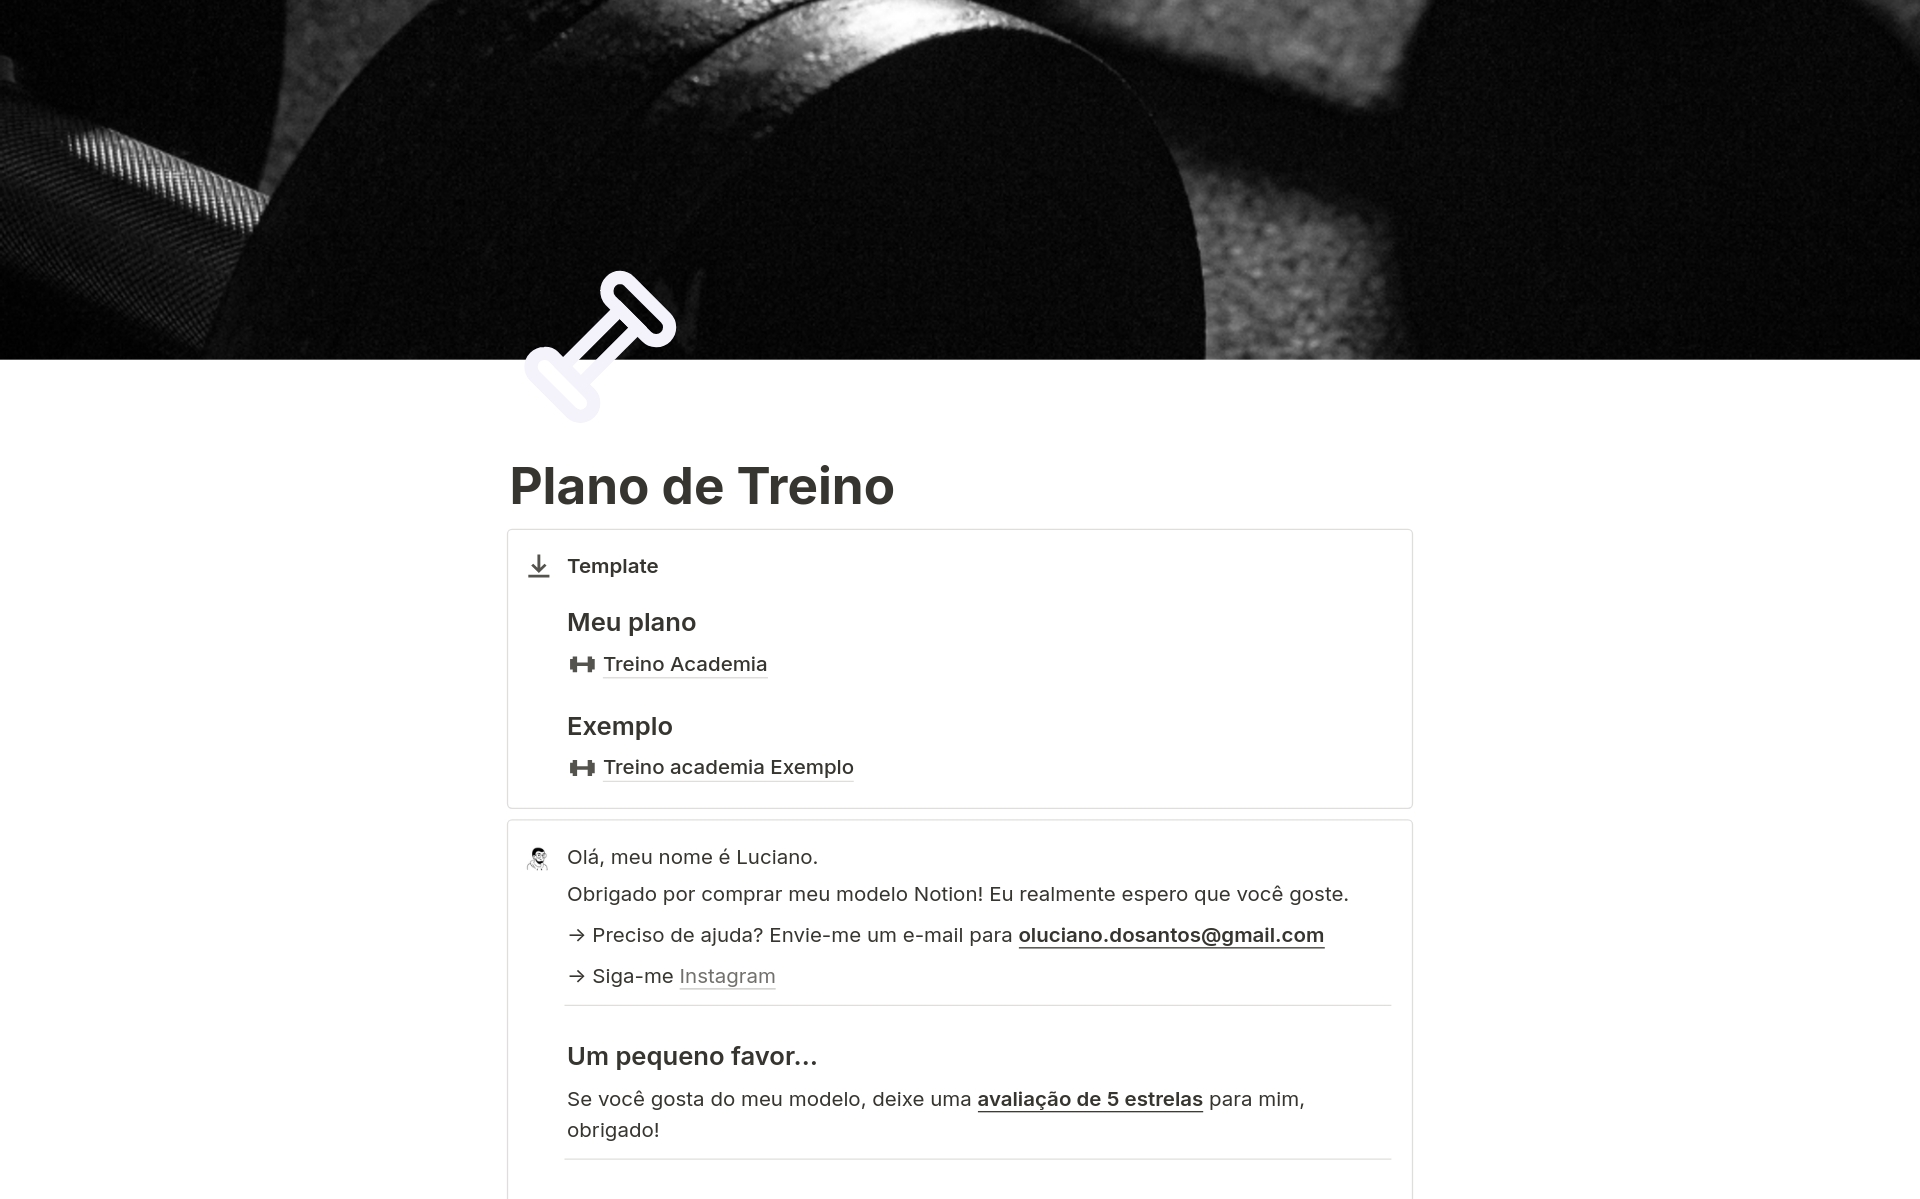 Eine Vorlagenvorschau für Plano de Treino